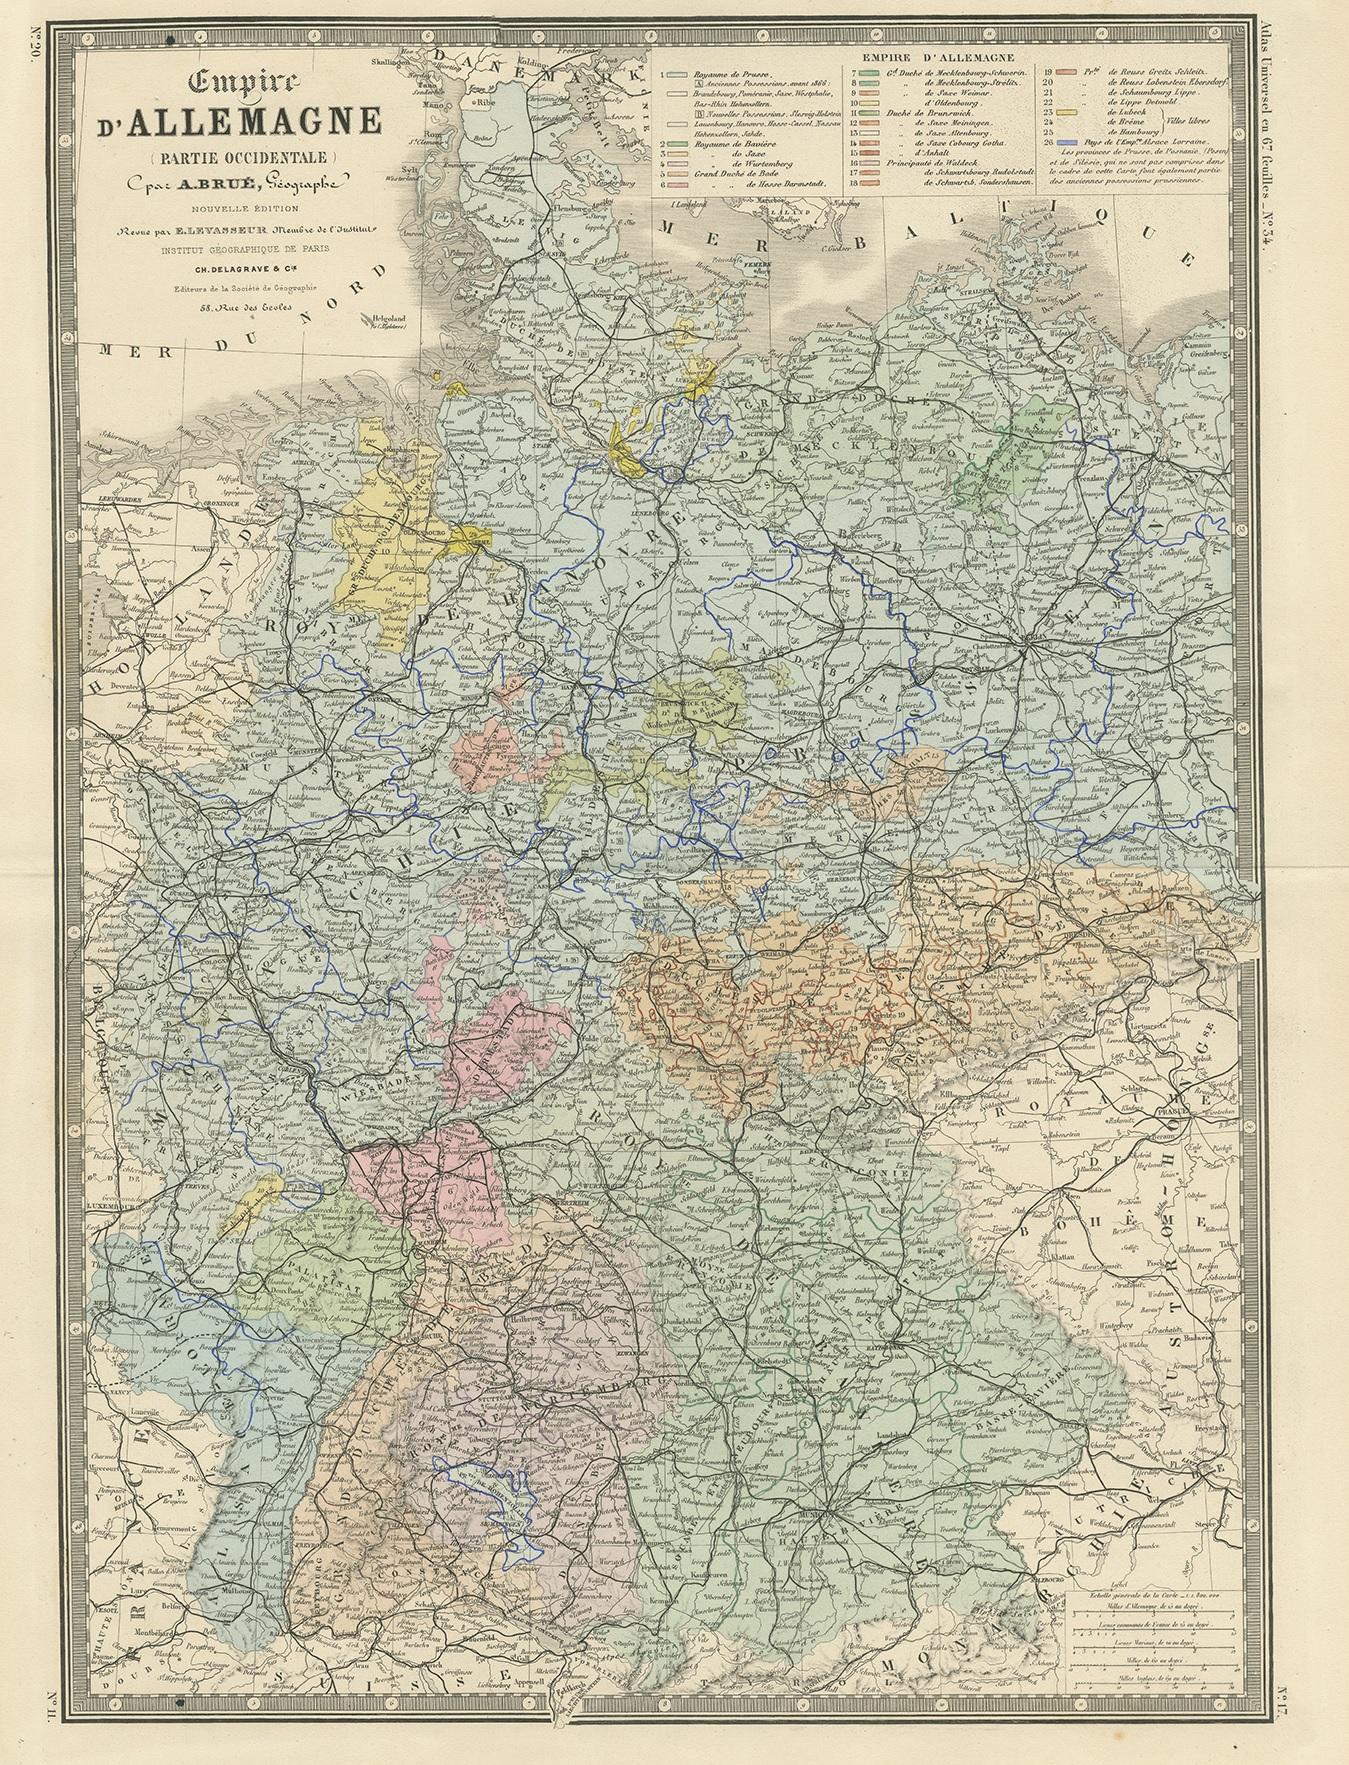 Antike Karte mit dem Titel 'Empire d'Allemagne (...)'. Große Karte des westlichen Teils des Deutschen Reiches. Diese Karte stammt aus dem 